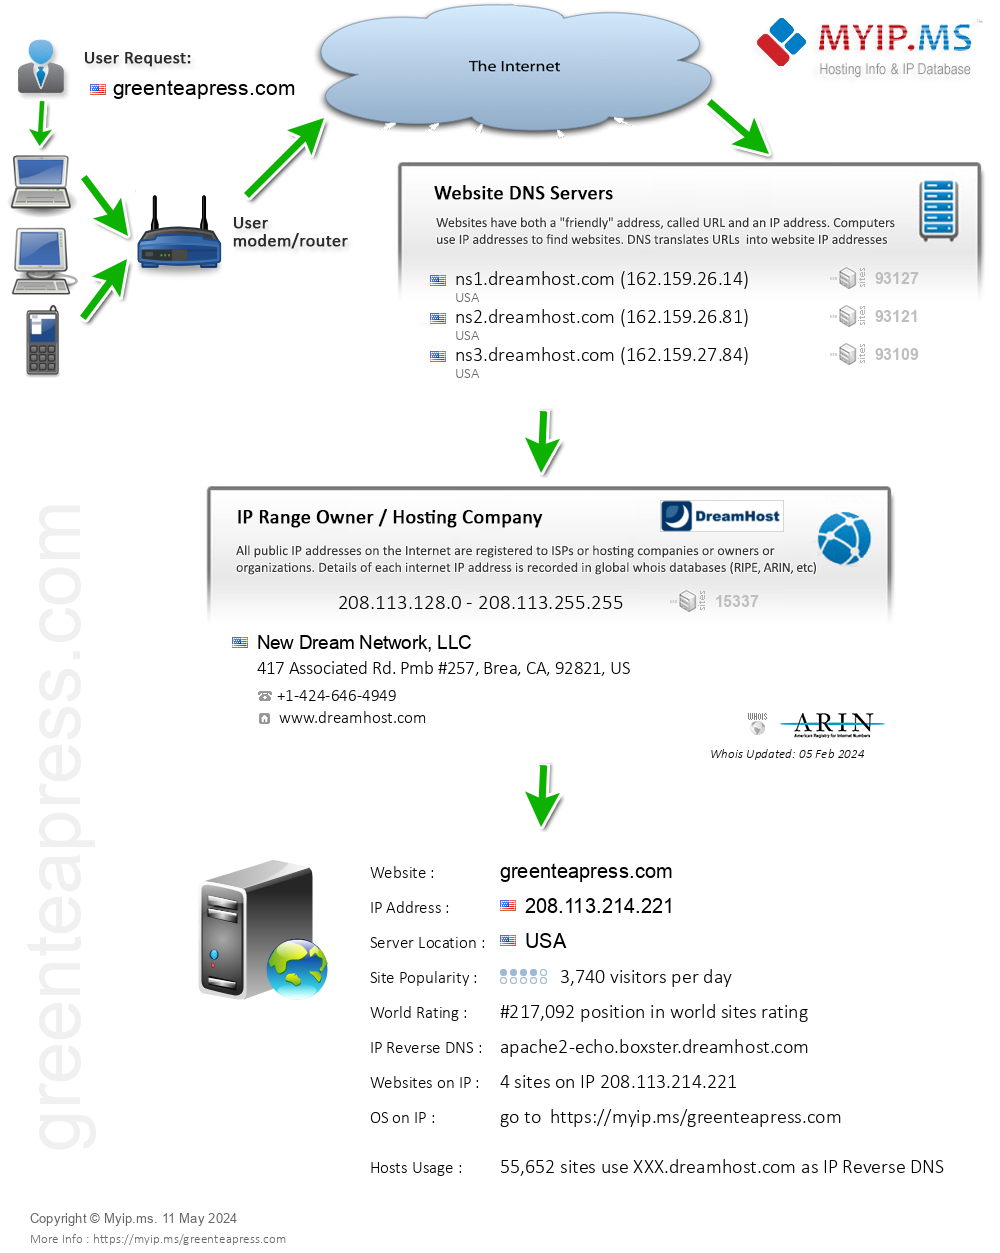 Greenteapress.com - Website Hosting Visual IP Diagram